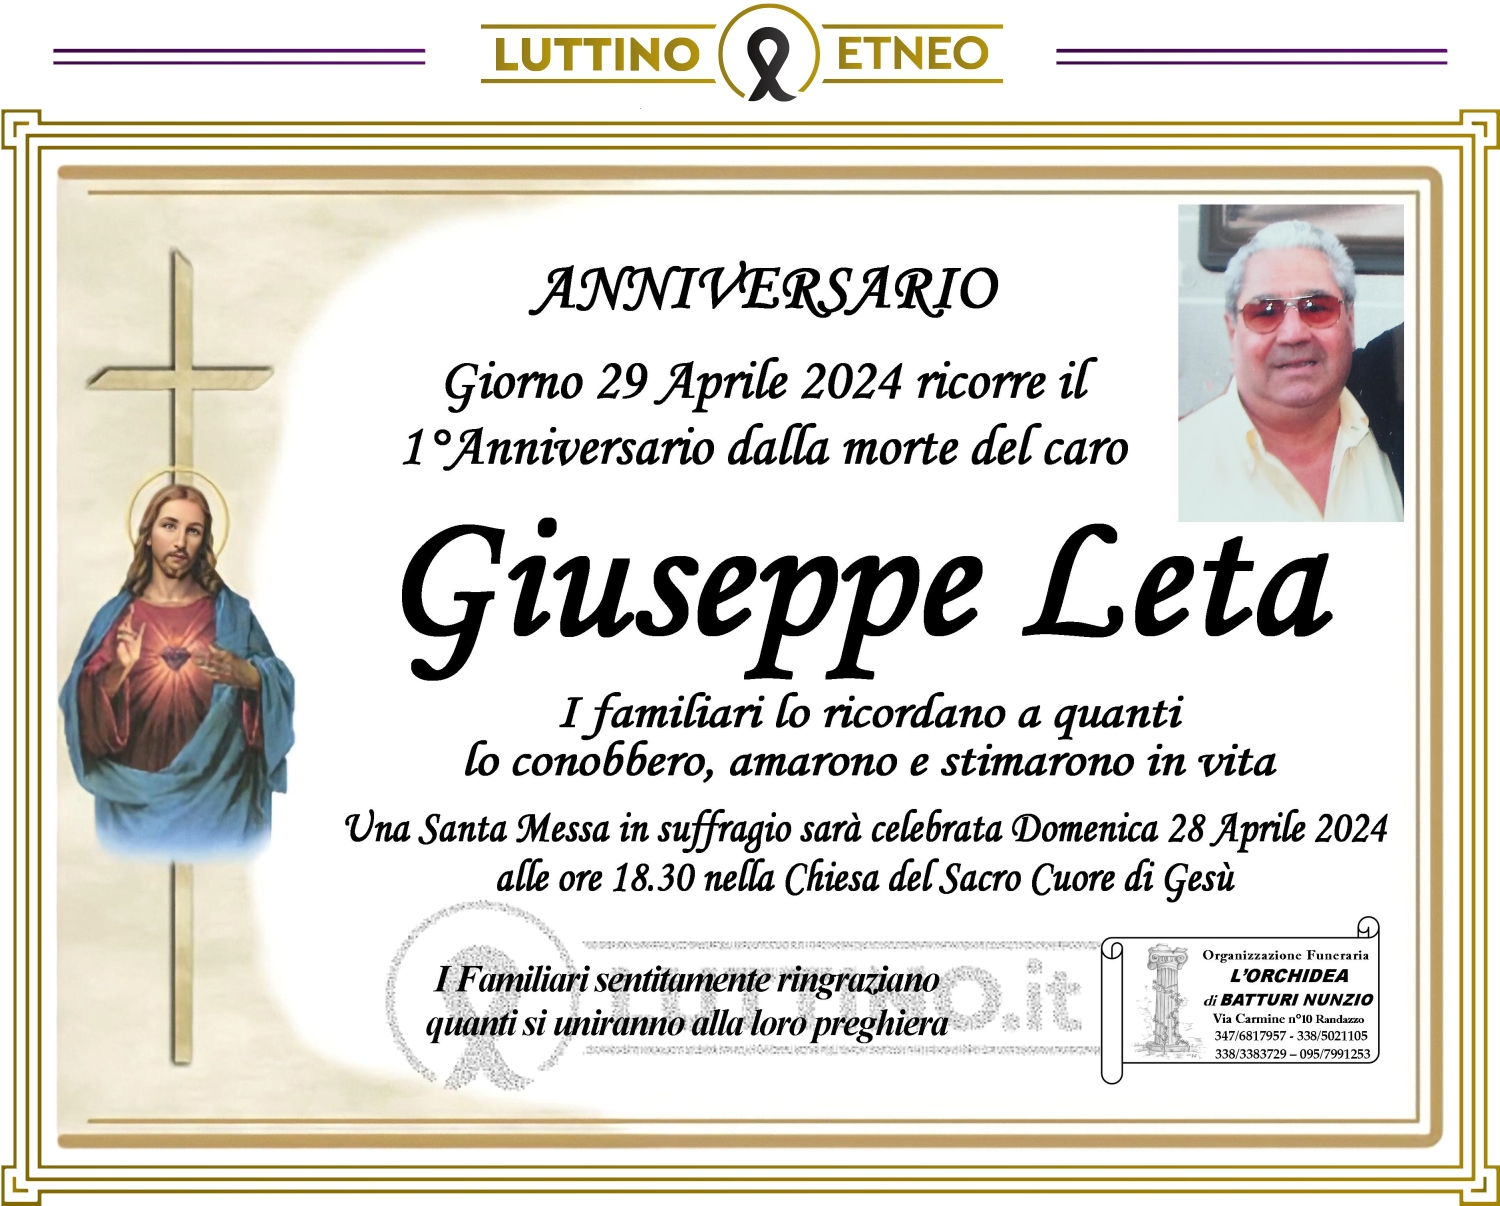 Giuseppe Leta